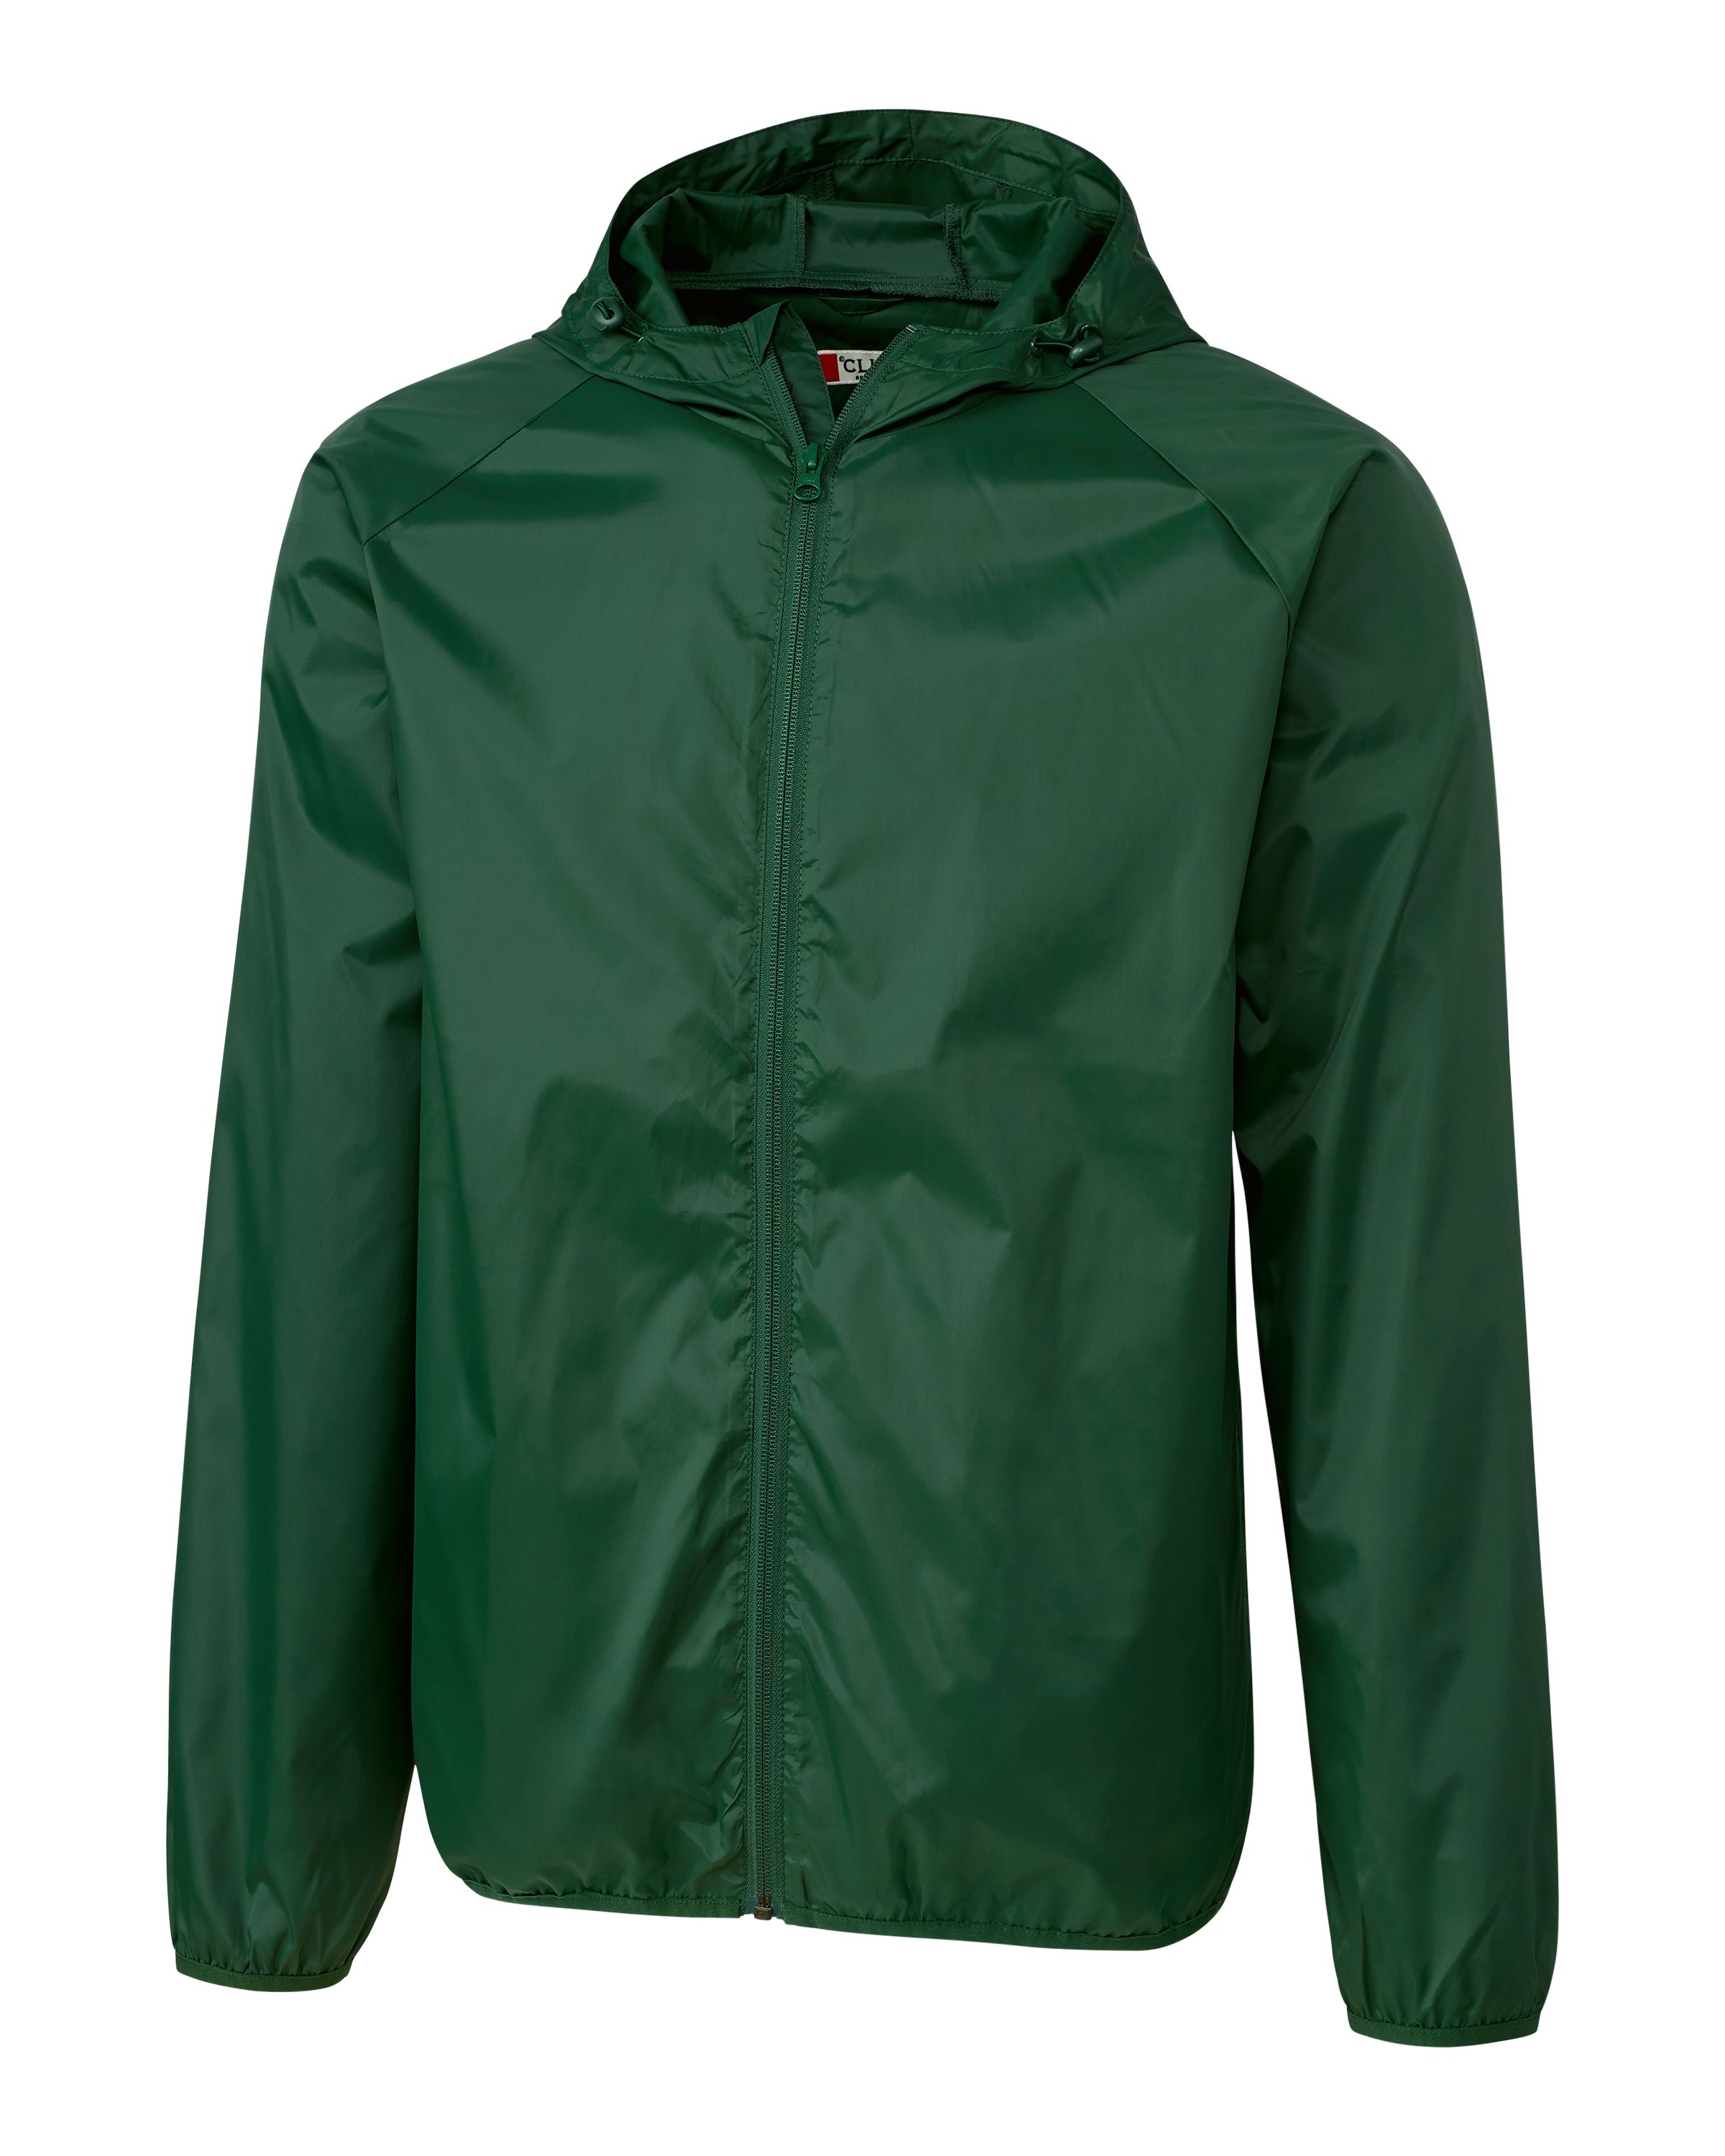 Clique Men's Reliance Water Resistant Packable Full Zip Golf Jacket - image 1 of 2